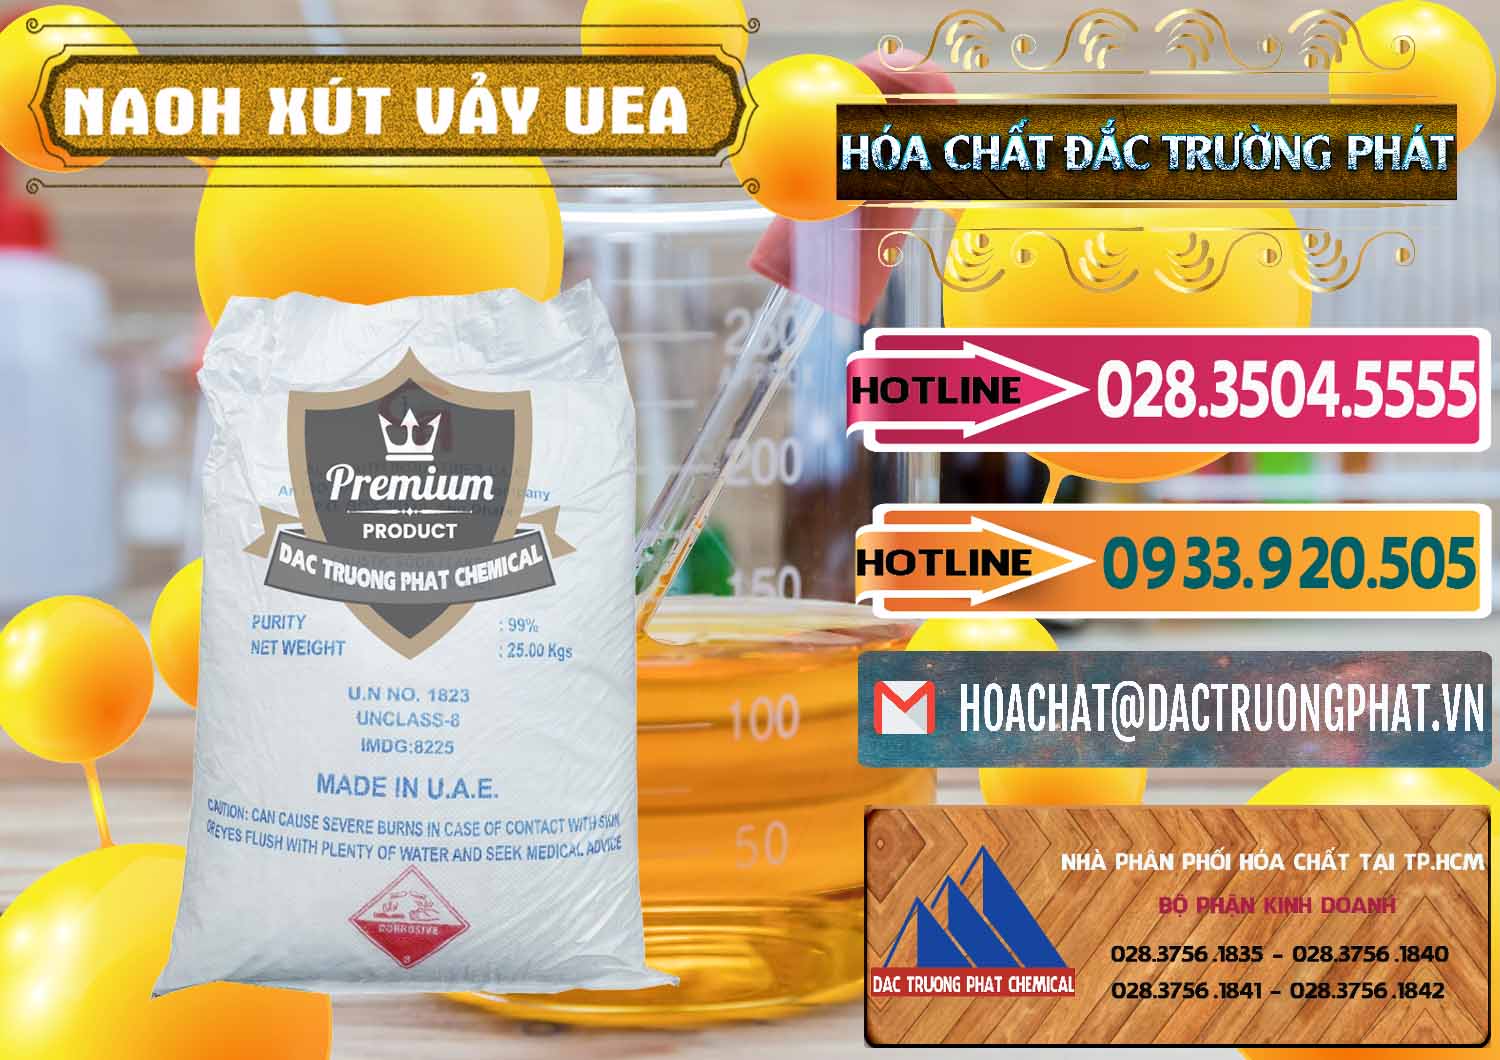 Cty cung ứng ( bán ) Xút Vảy - NaOH Vảy UAE Iran - 0432 - Nơi cung cấp _ phân phối hóa chất tại TP.HCM - dactruongphat.vn